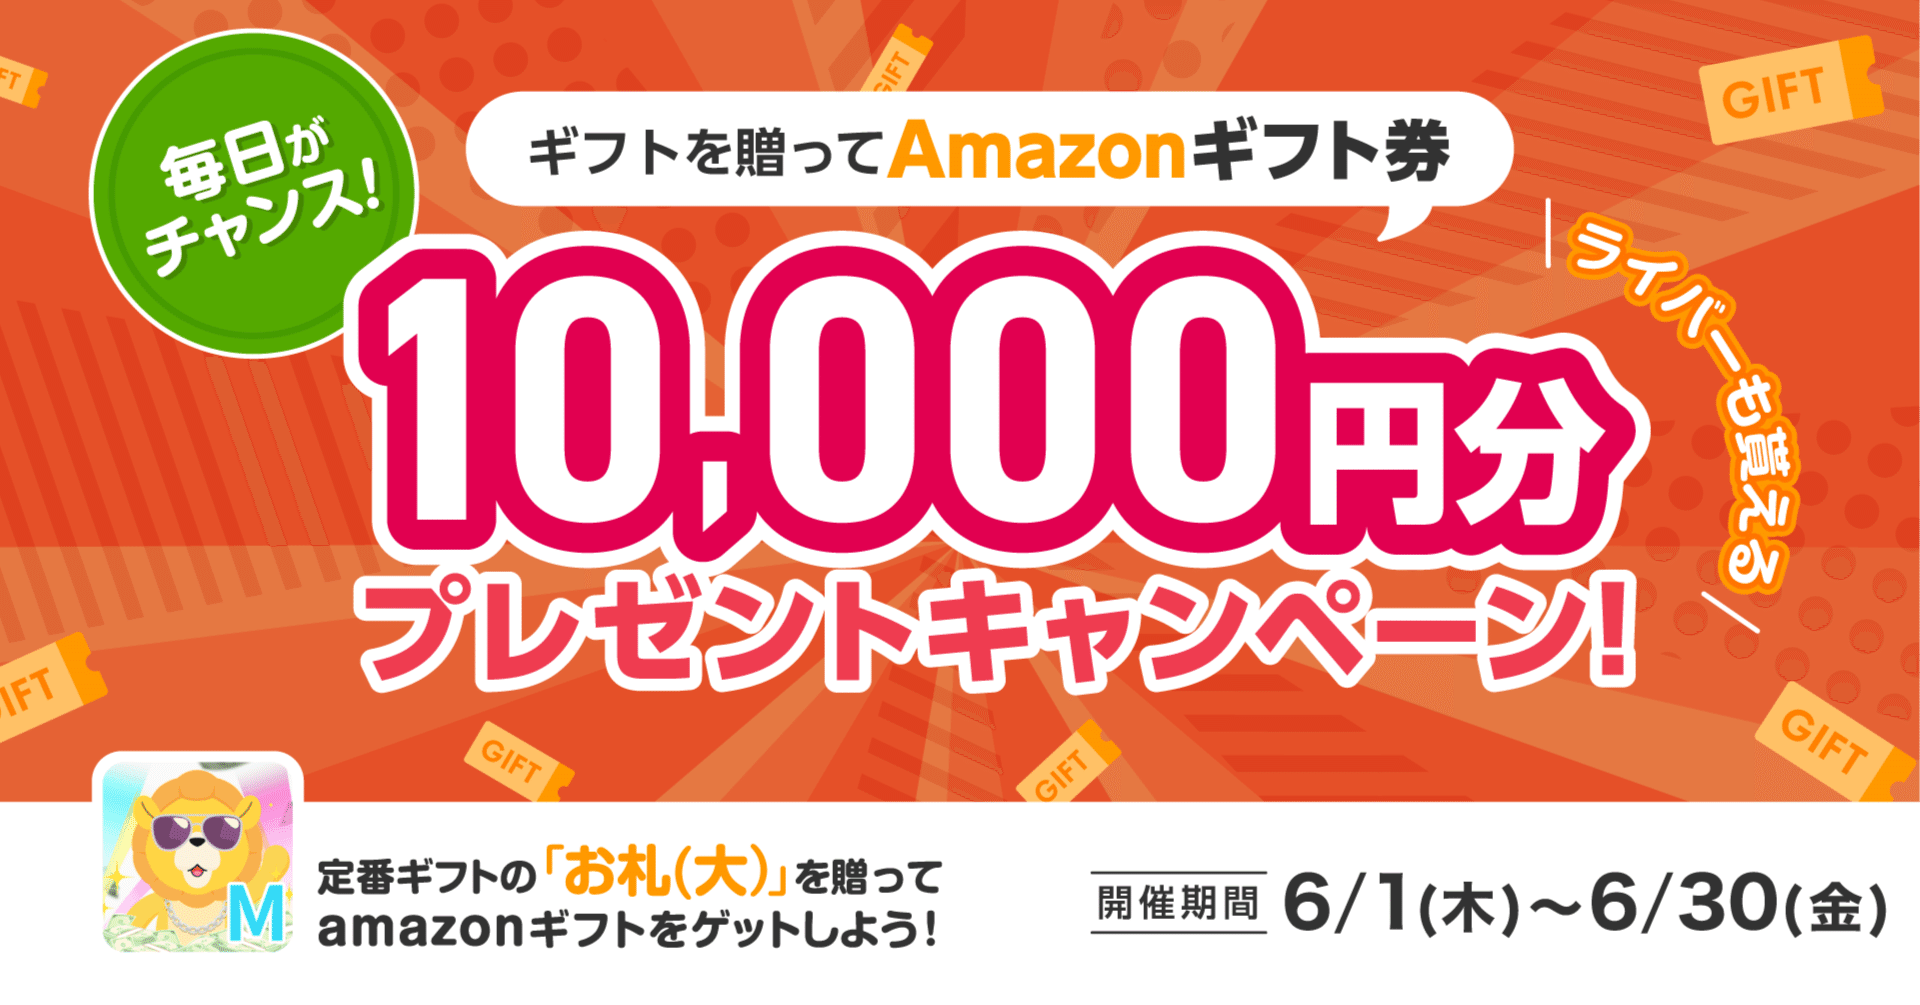 6月版「Amazonギフト券10,000円分プレゼントキャンペーン」開催の